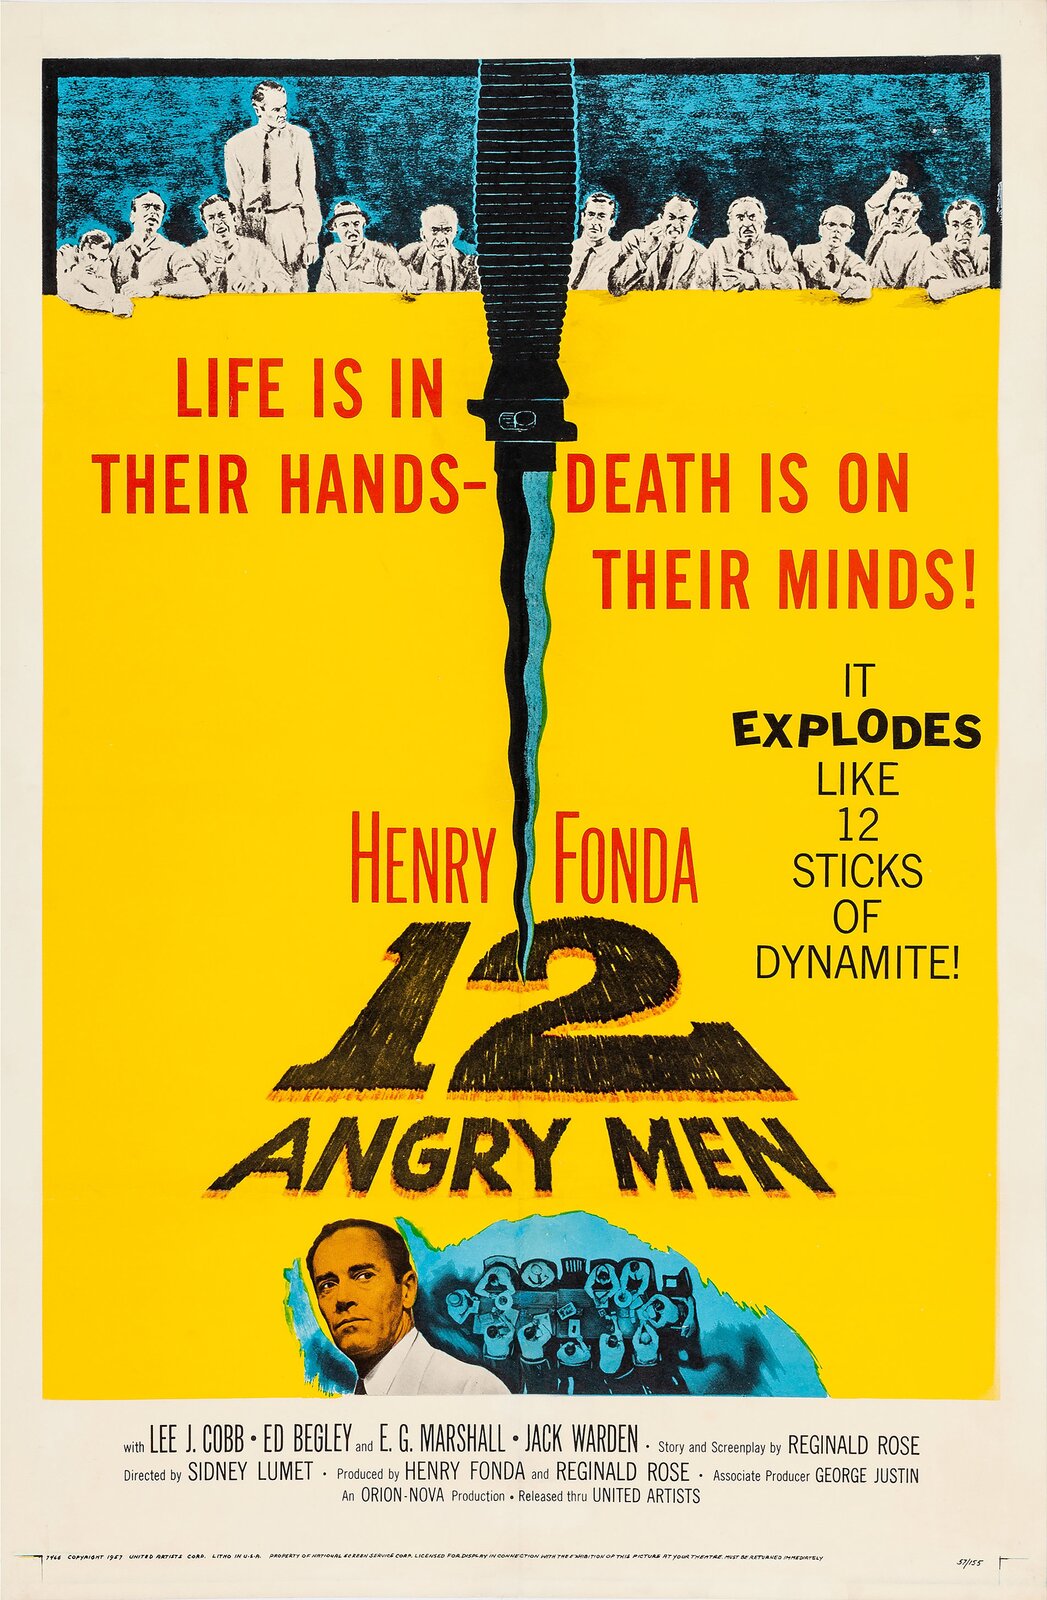 Ilustracja przedstawia plakat. Na jego górze znajduje się dwunastu mężczyzn. Mężczyźni są podzieleni na dwie grupy nożem. Na plakacie znajduje się napis Life is in their hands - death is on their minds! It explodes like 12 sticks of dynamite! Henry Fonda, 12 angry men. Na dole rysunek przedstawiający Henrego Fondę i stół, przy którym siedzi dwunastu mężczyzn.